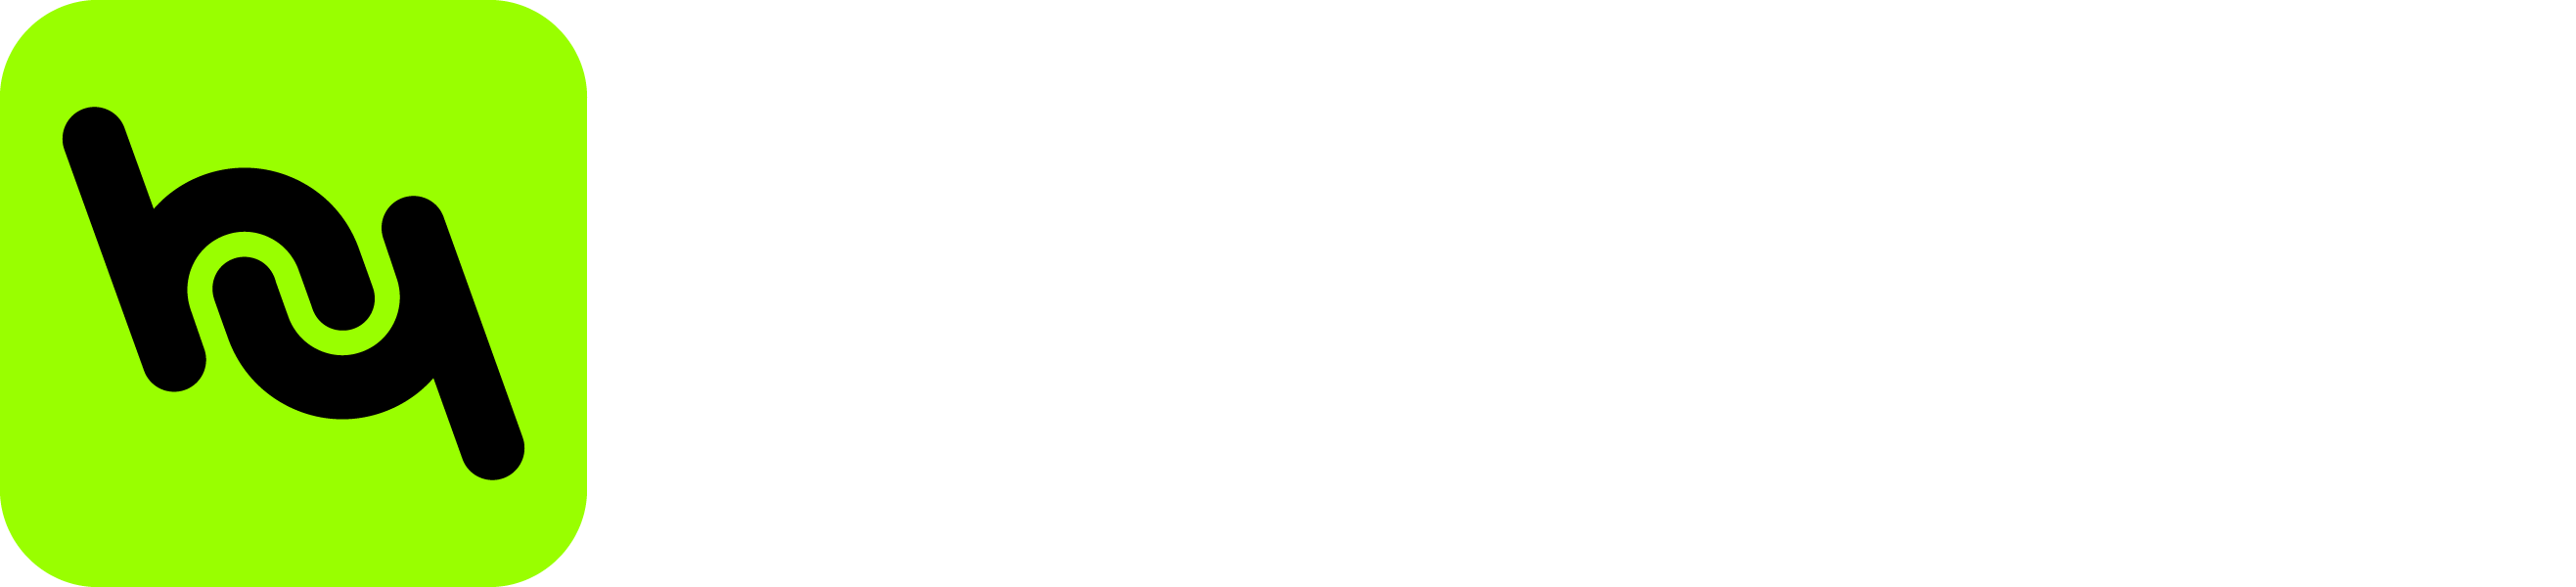 HypeHype logo